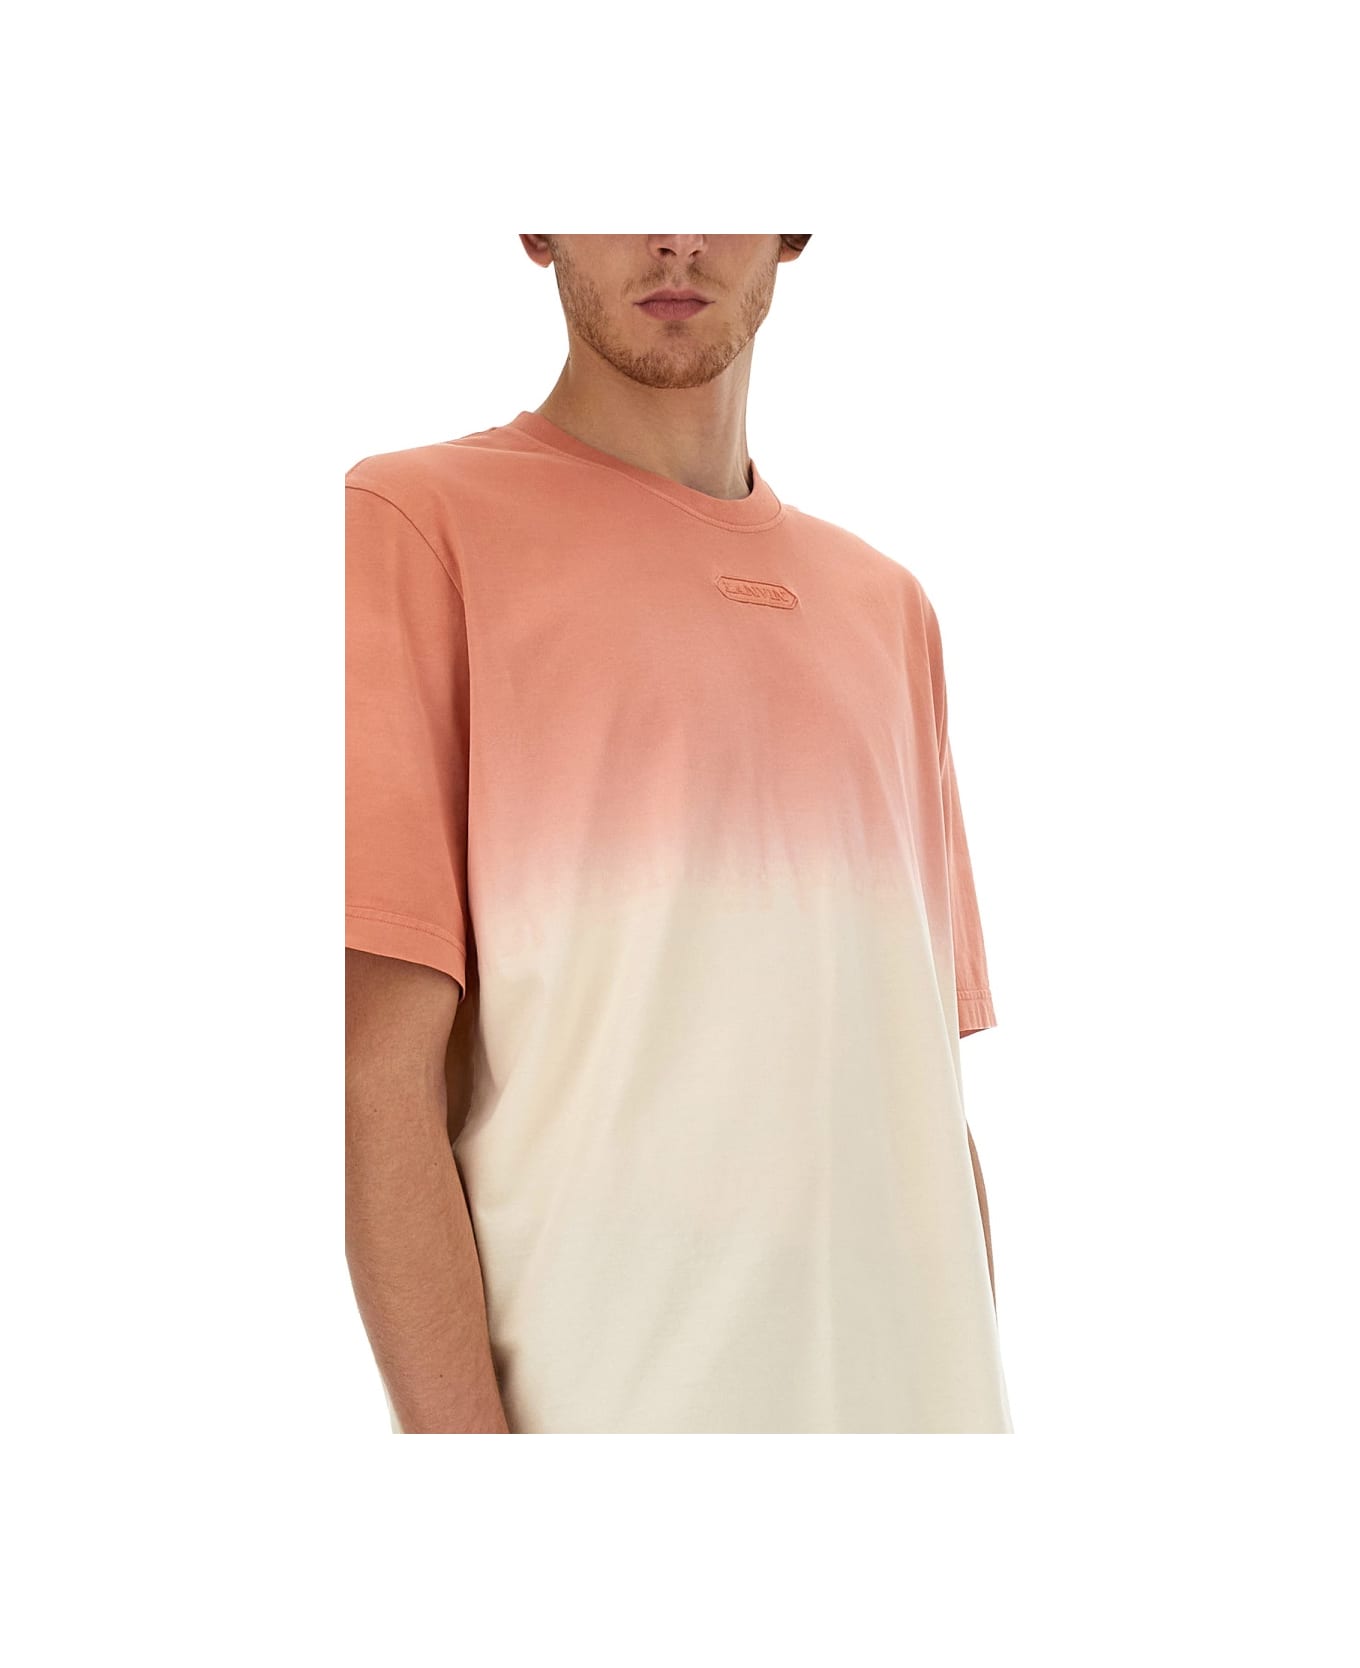 Lanvin Degradé T-shirt - BEIGE シャツ